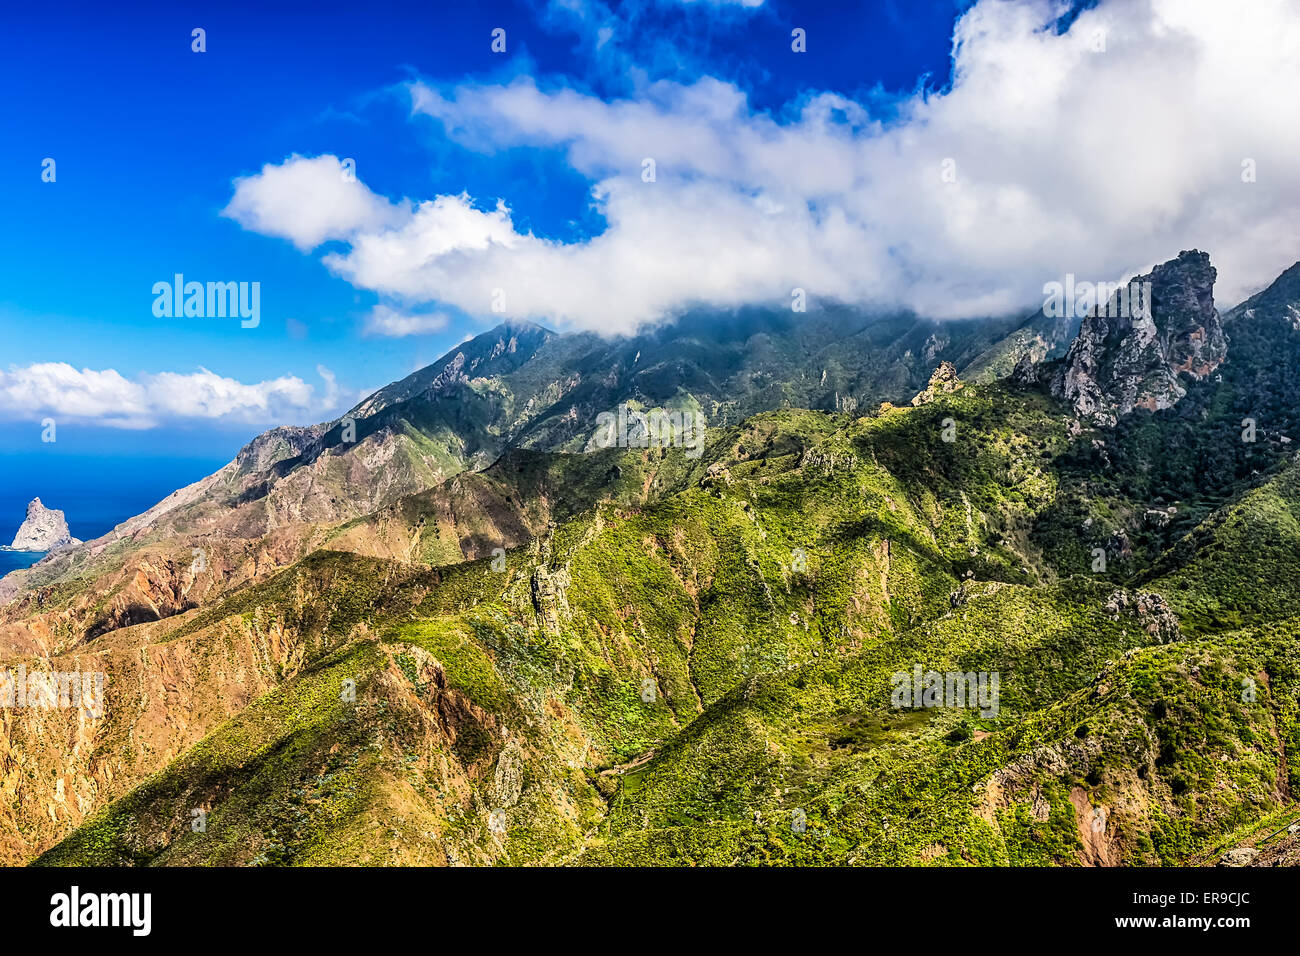 Montagne verdi con le nubi sul cielo blu paesaggio nell'isola di Tenerife, Spagna Foto Stock